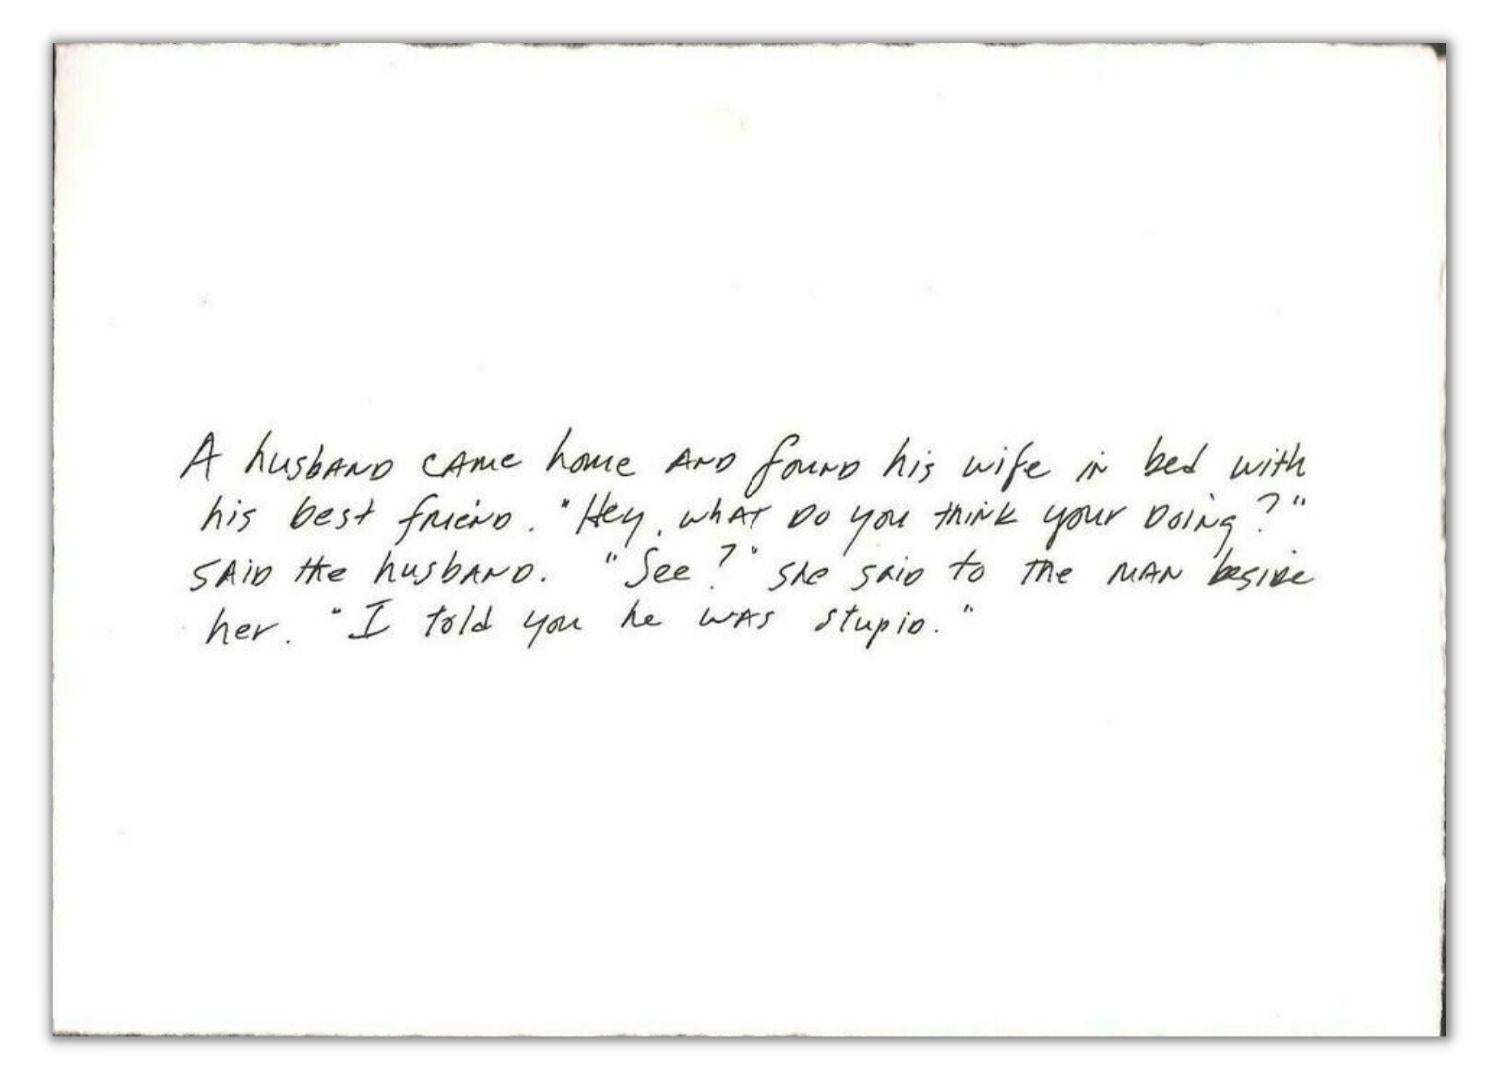 Richard Prince, Les blagues sur les cartes de vœux #2 : Le meilleur ami, 2011

Tirage estampillé, sur papier vélin épais, plié.
État neuf, jamais encadré ou exposé. Signé à la main et numéroté par l'artiste, au verso. Collection privée